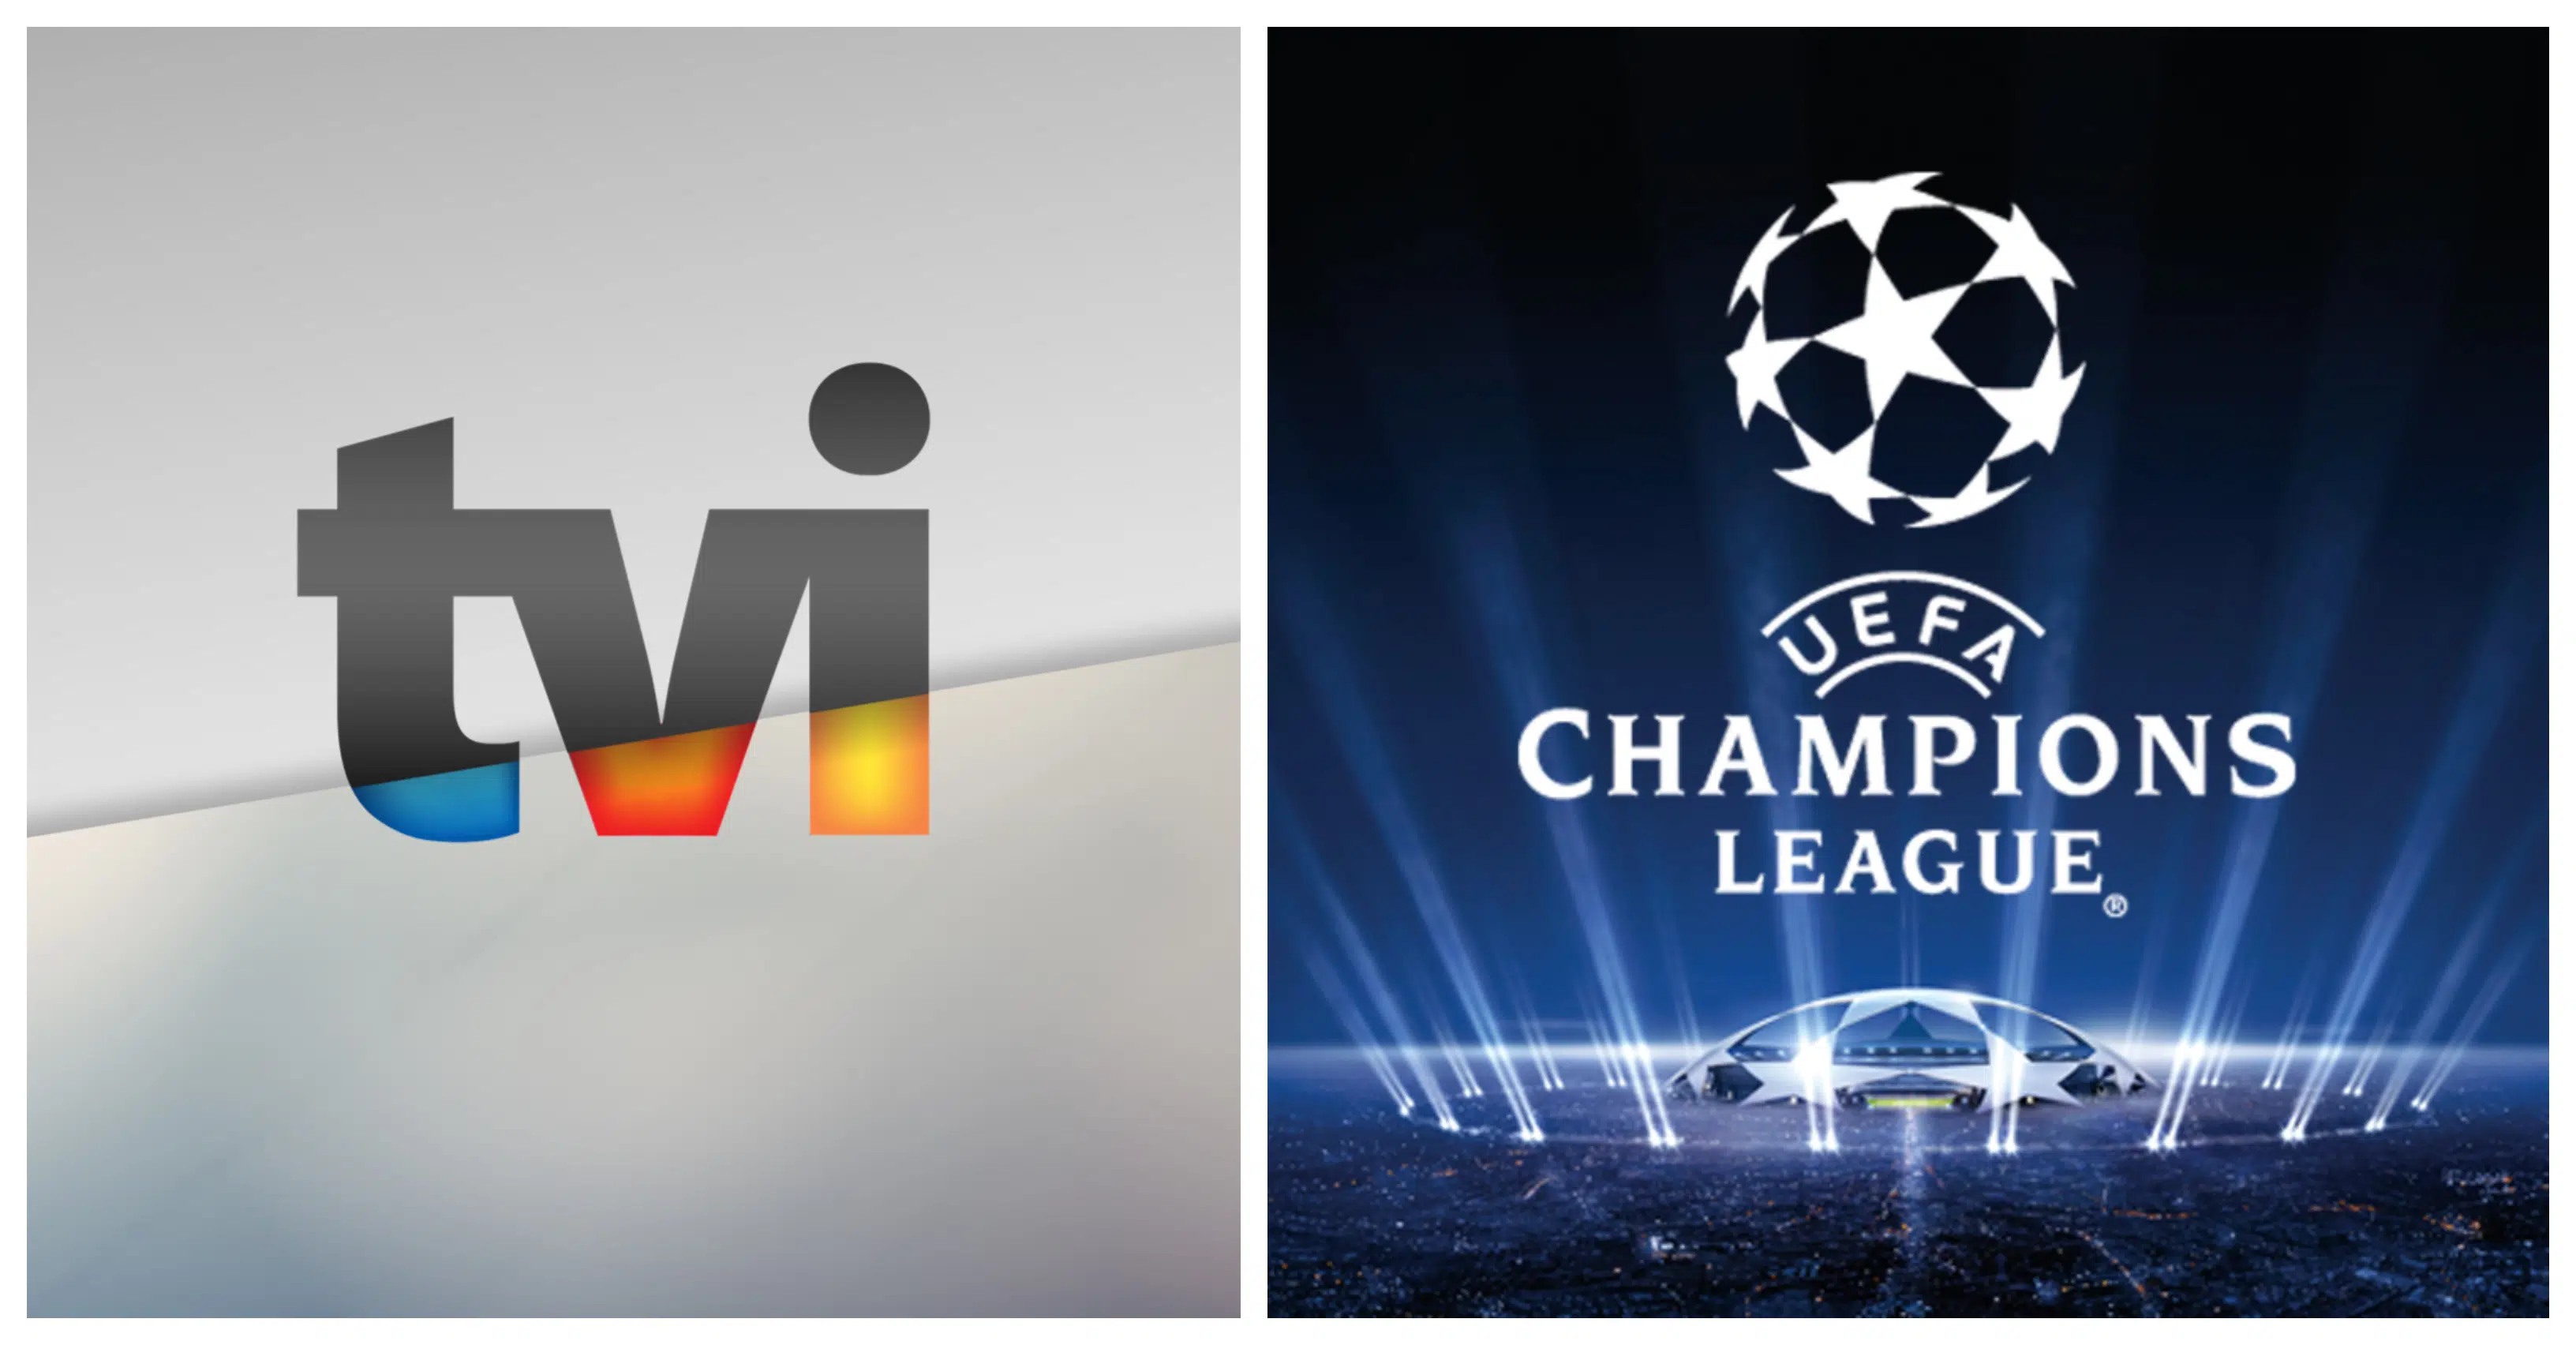 Uefa Champions League, Tvi